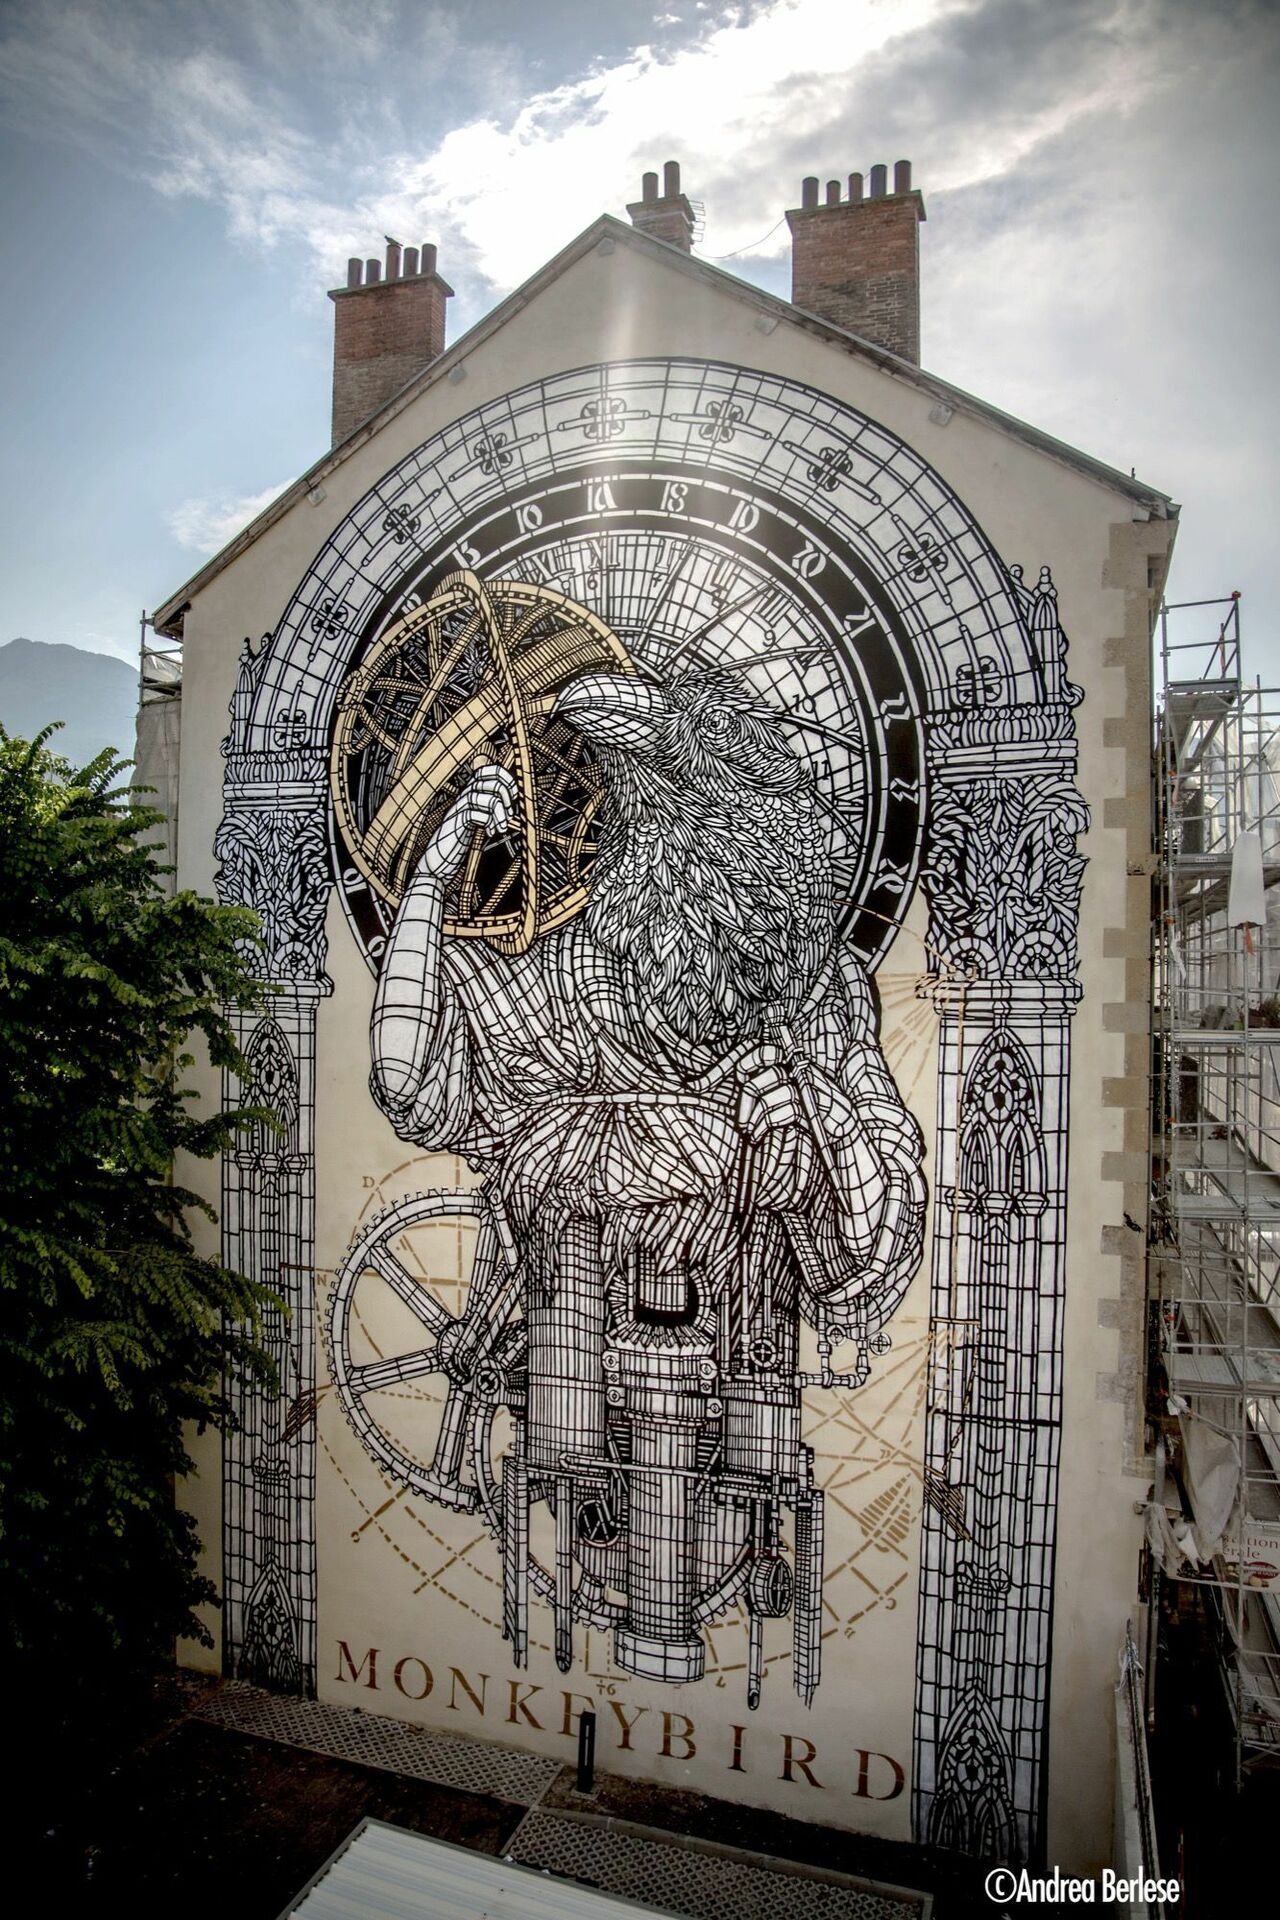 Monkeybird in Grenoble, France#streetart #mural #graffiti #art https://t.co/7i8BDzjJnO